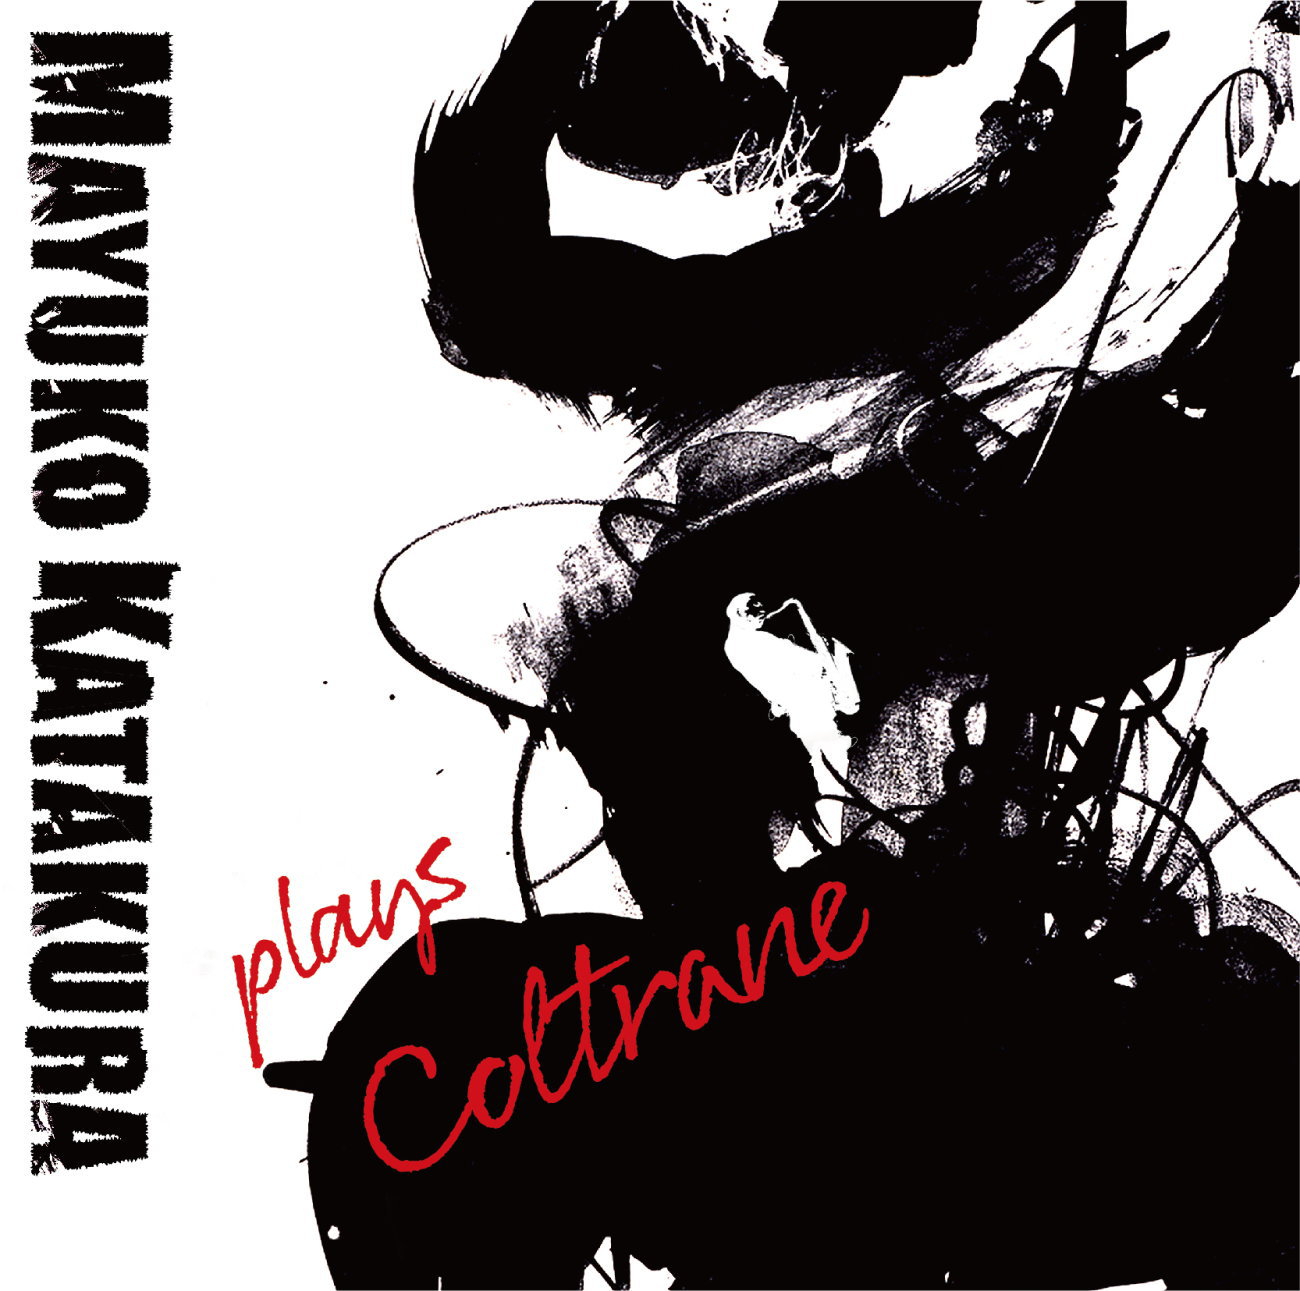 ダイナミック スピーディーでスピリチュアル かつ クール インテリジェントな洗練さも漂う 現代ピアノ トリオによるコルトレーン音楽の新解釈 爽快 Cd 片倉 真由子 Mayuko Katakura Plays Coltrane